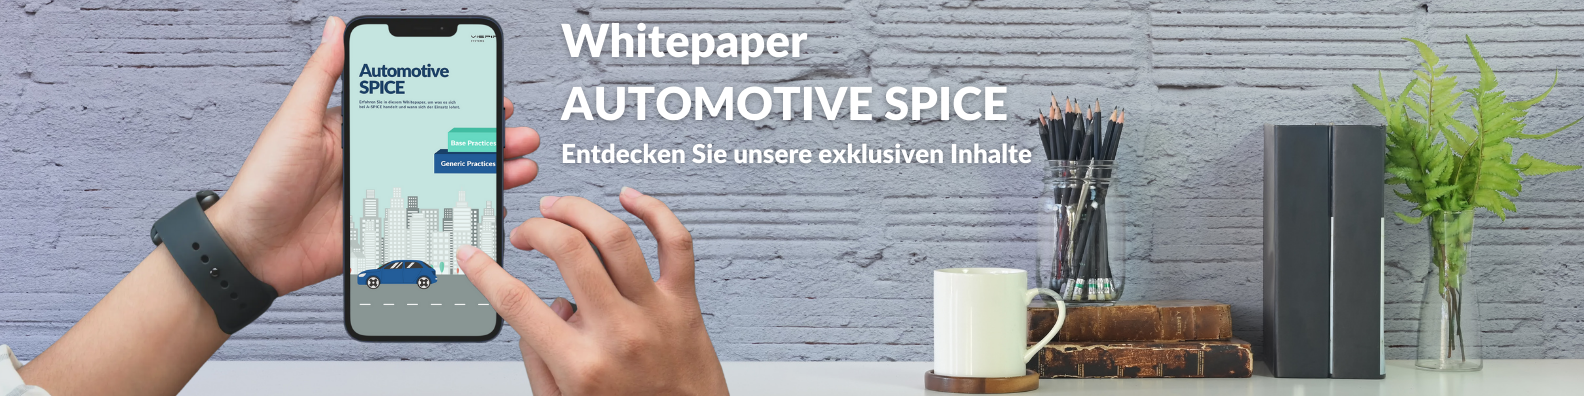 ASPICE Whitepaper, Banner als Einleitung zum Thema A-SPICE bei VISPIRON